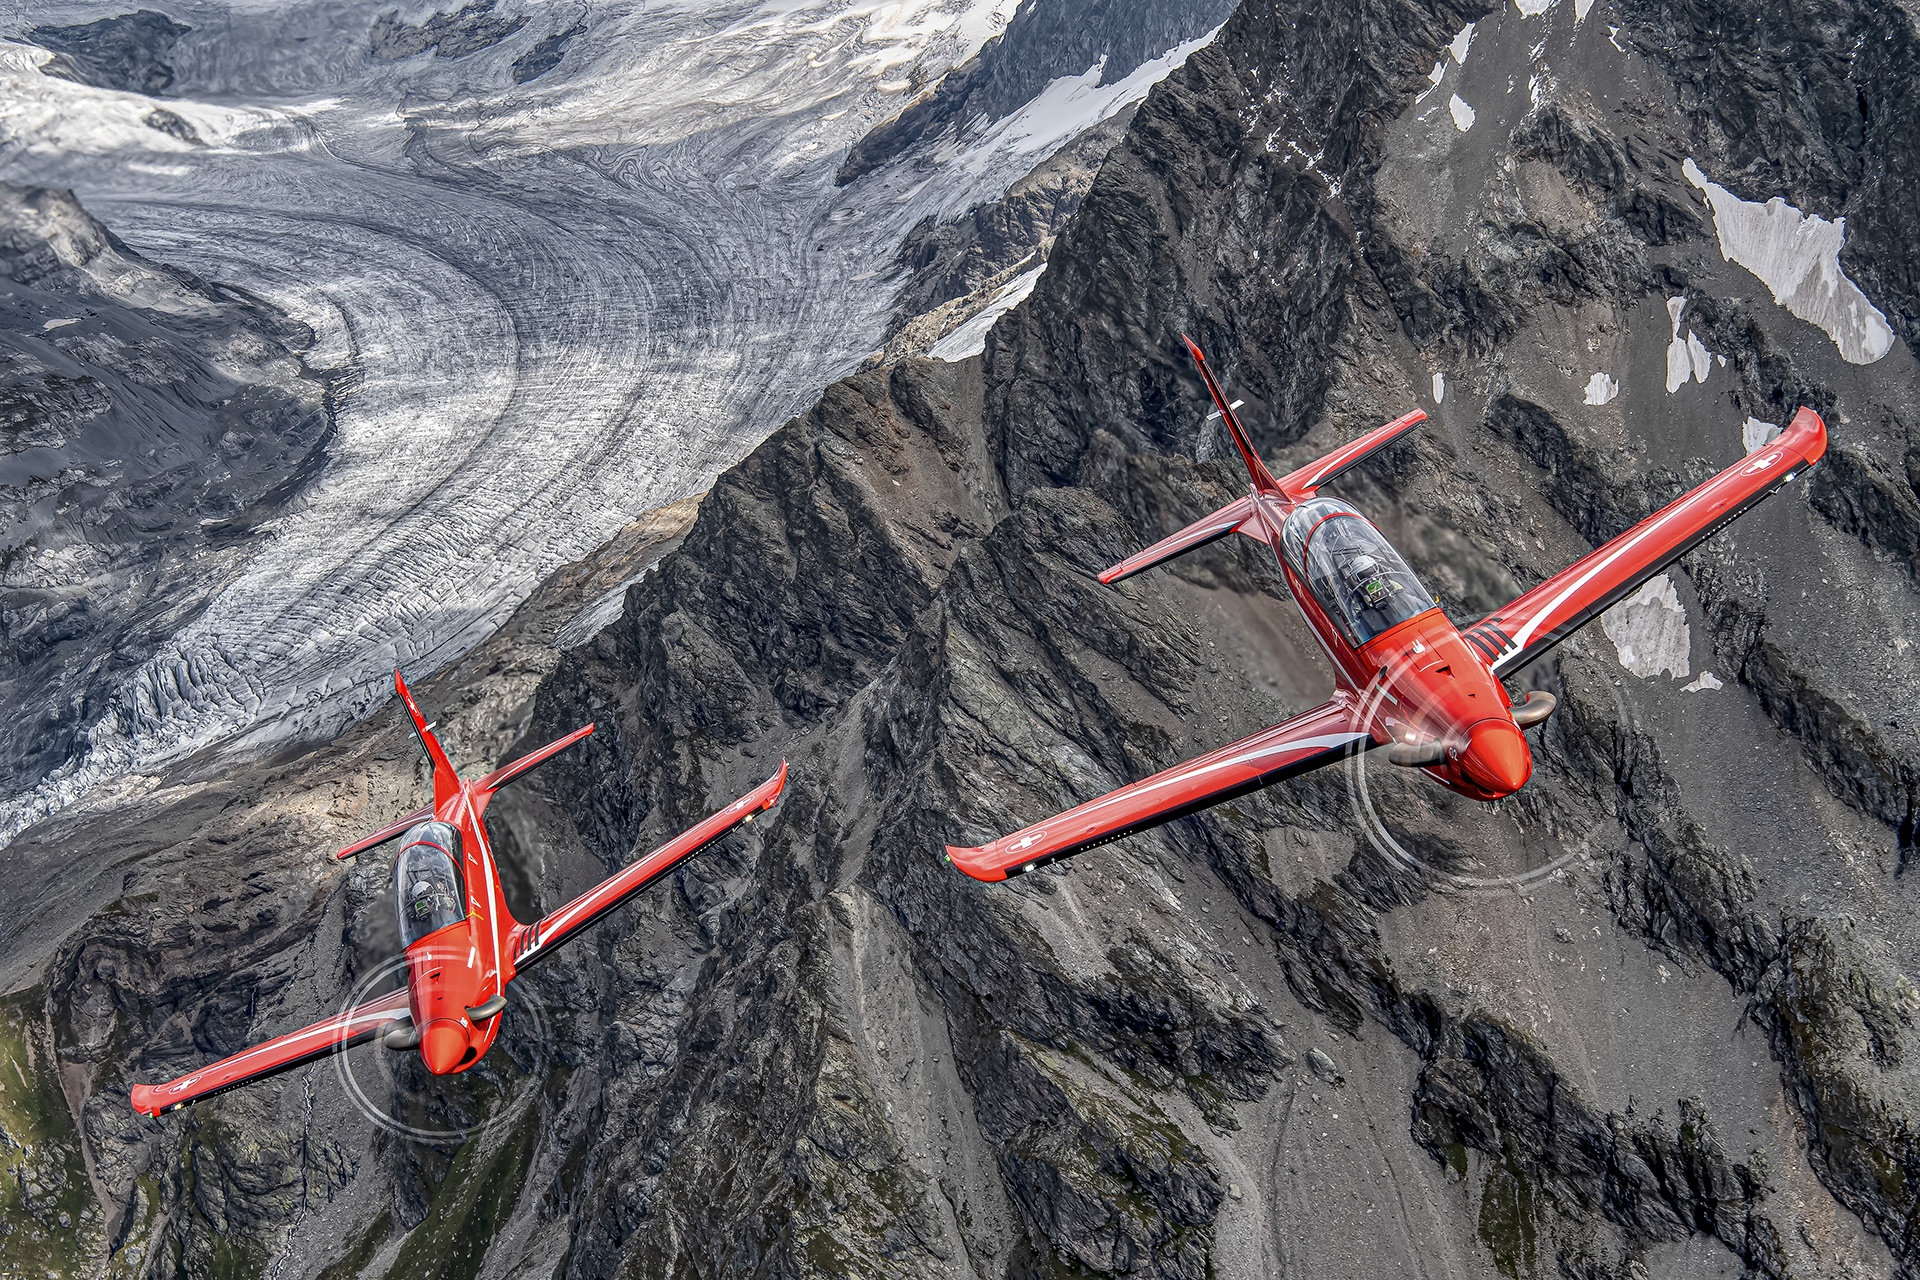 Ausbildungsflugzeug. Luftkampf-, Blind- und Kunstflugschulung. Berge, Gletscher, Air-to-air